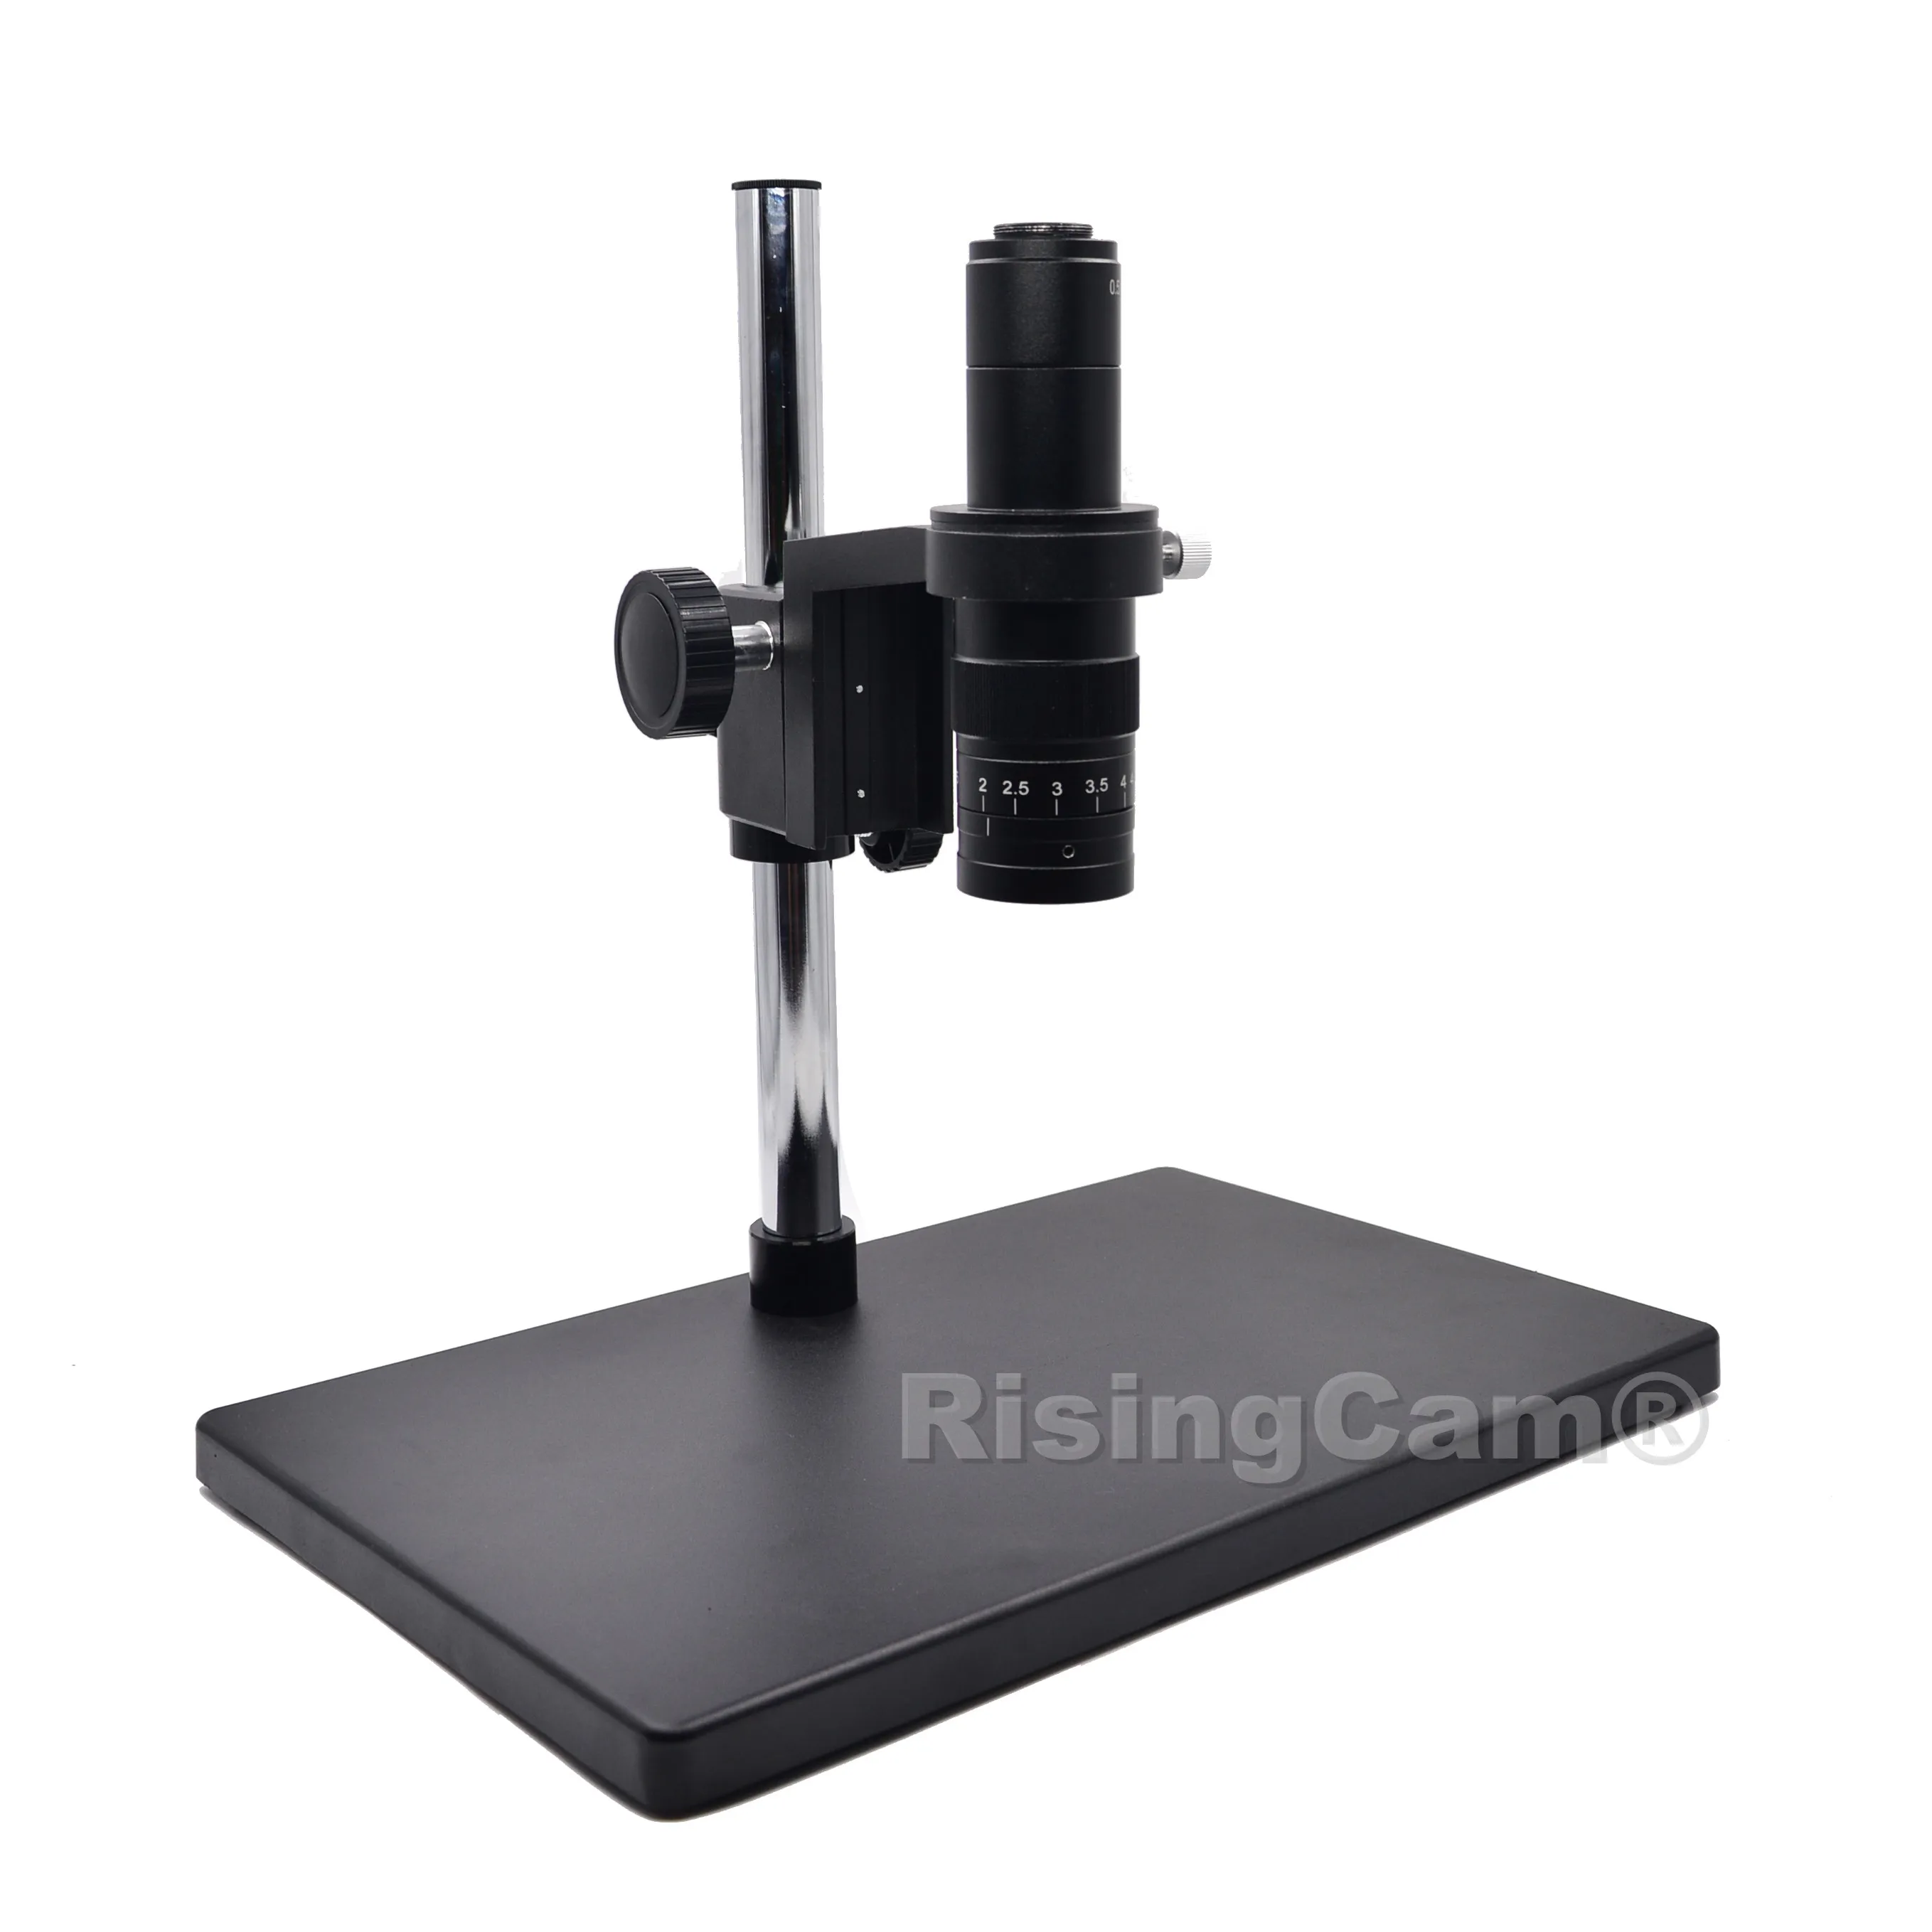 Зум 0.7x-4.5x монокулярный зум стерео микроскоп 0.5X C mount промышленная линза для ремонта печатных плат телефонов - Цвет: RT-10A microscope